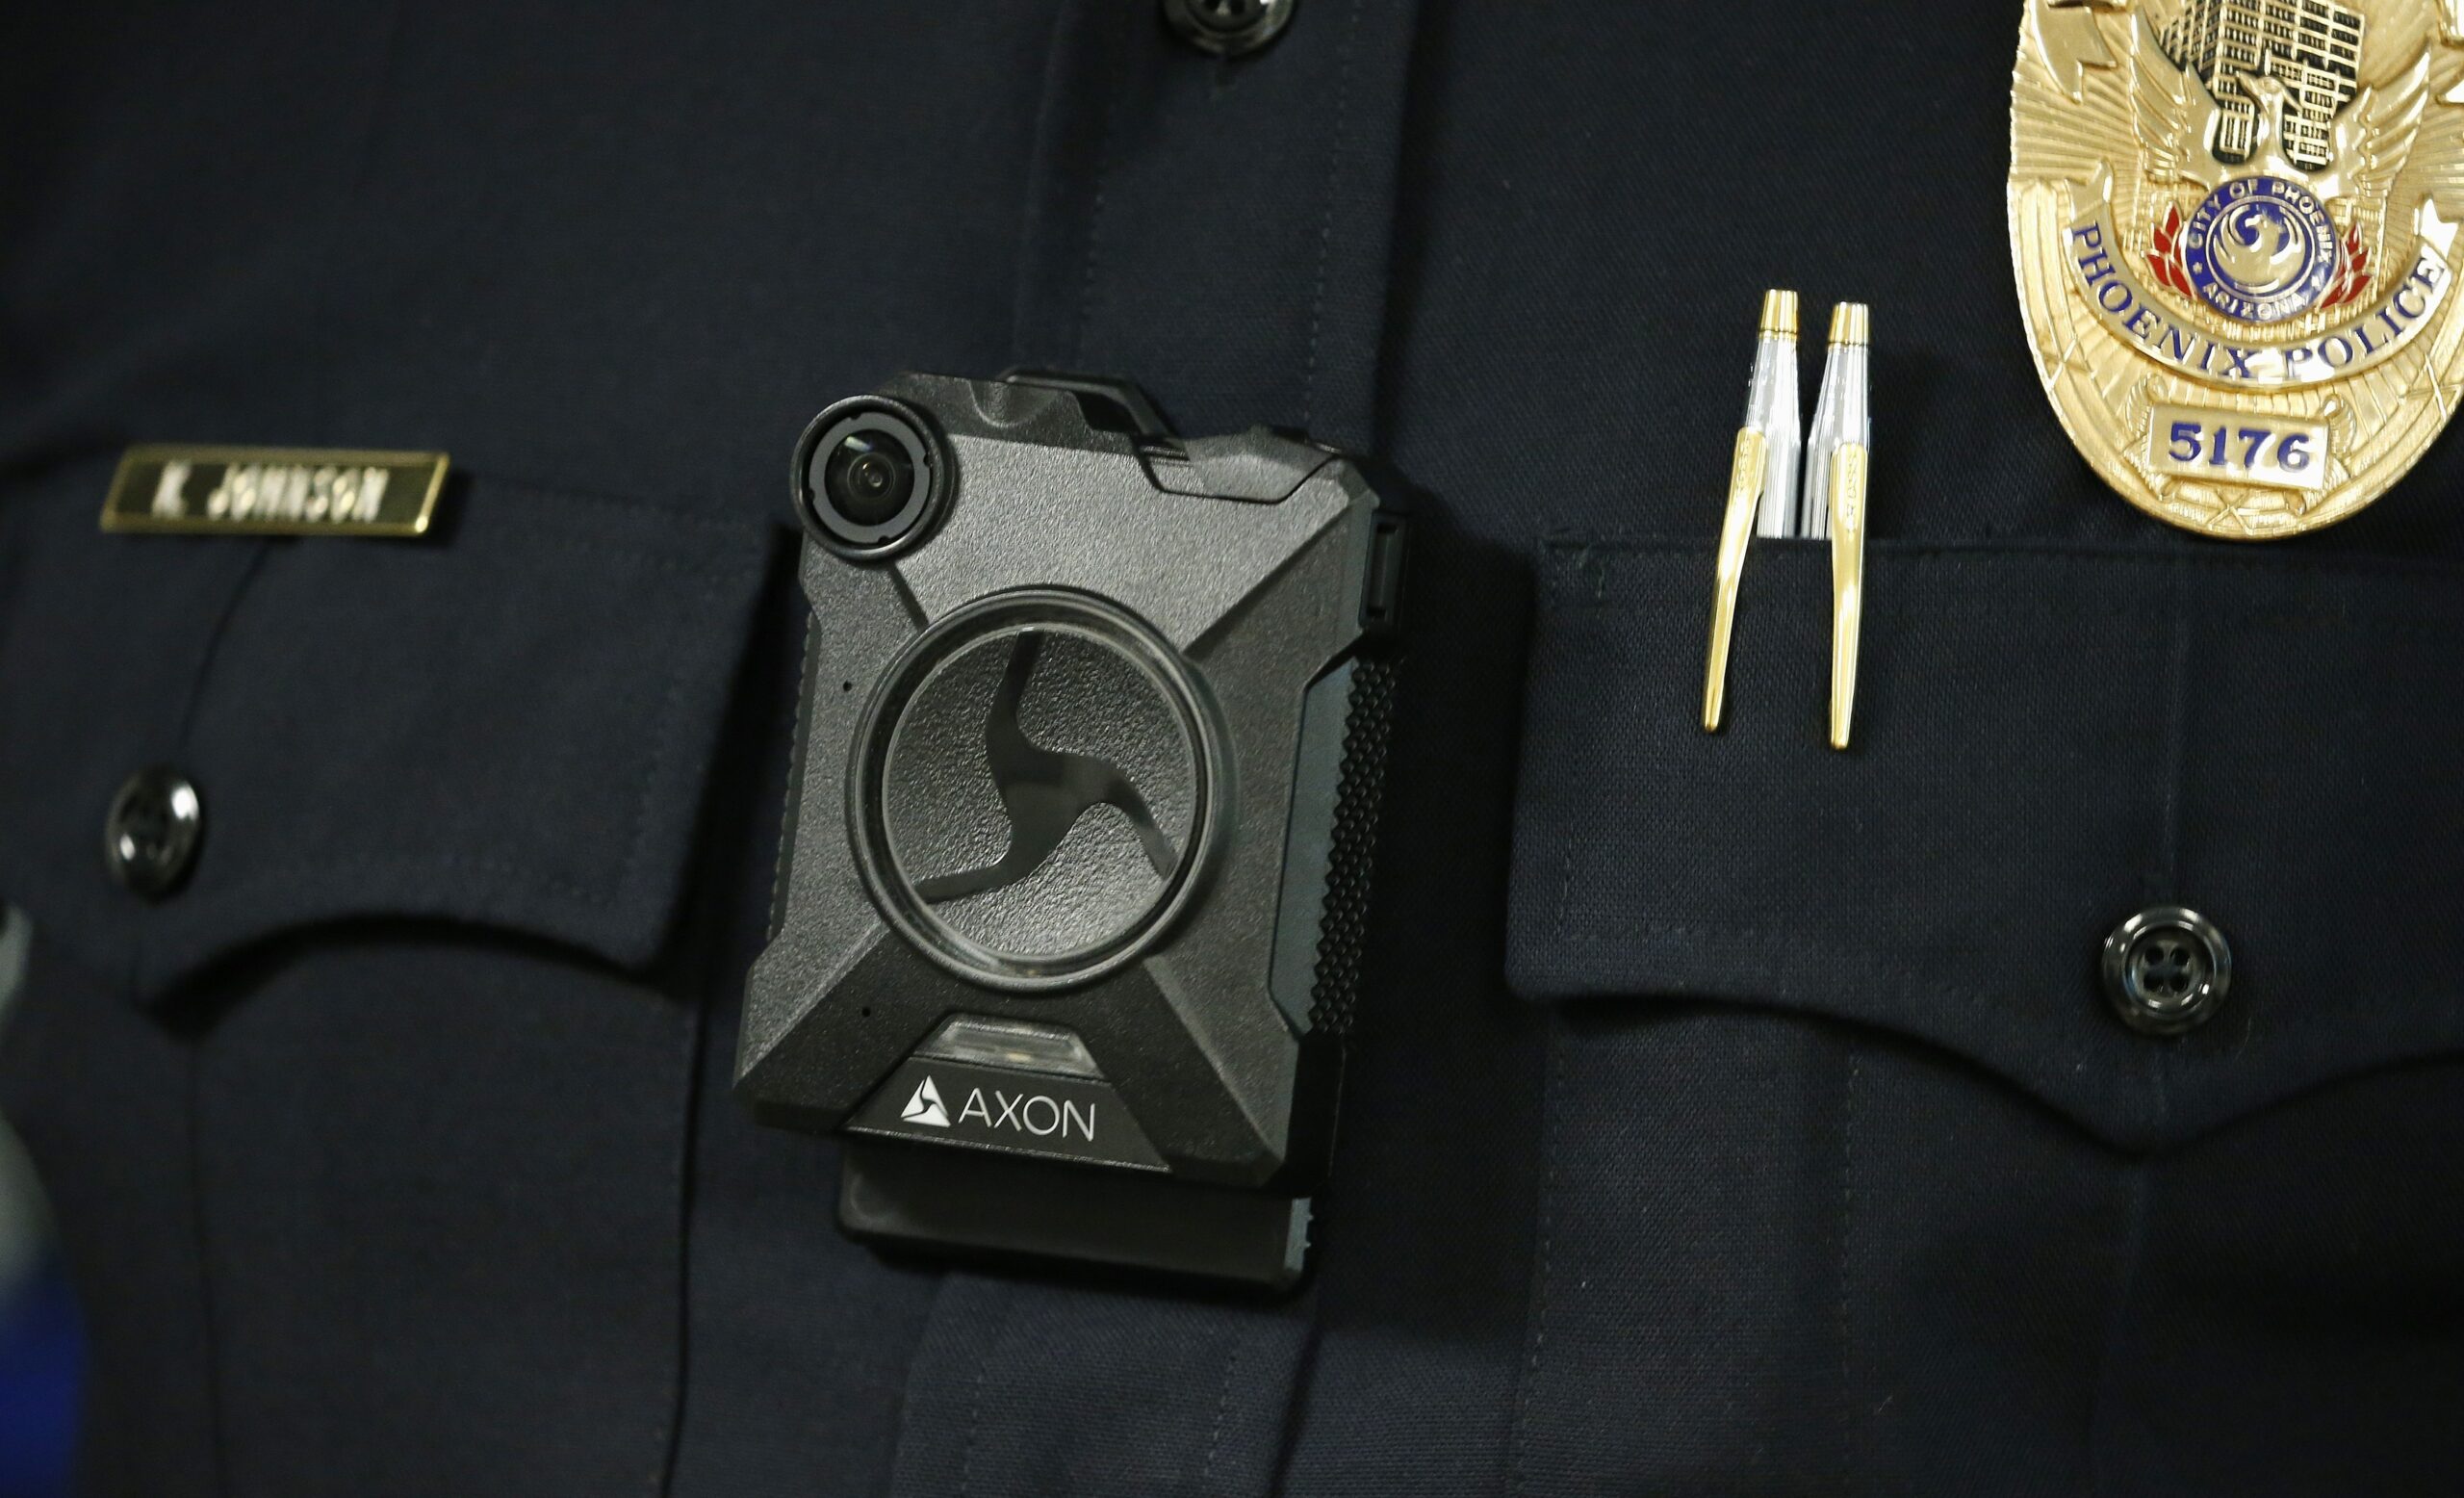 Police body camera